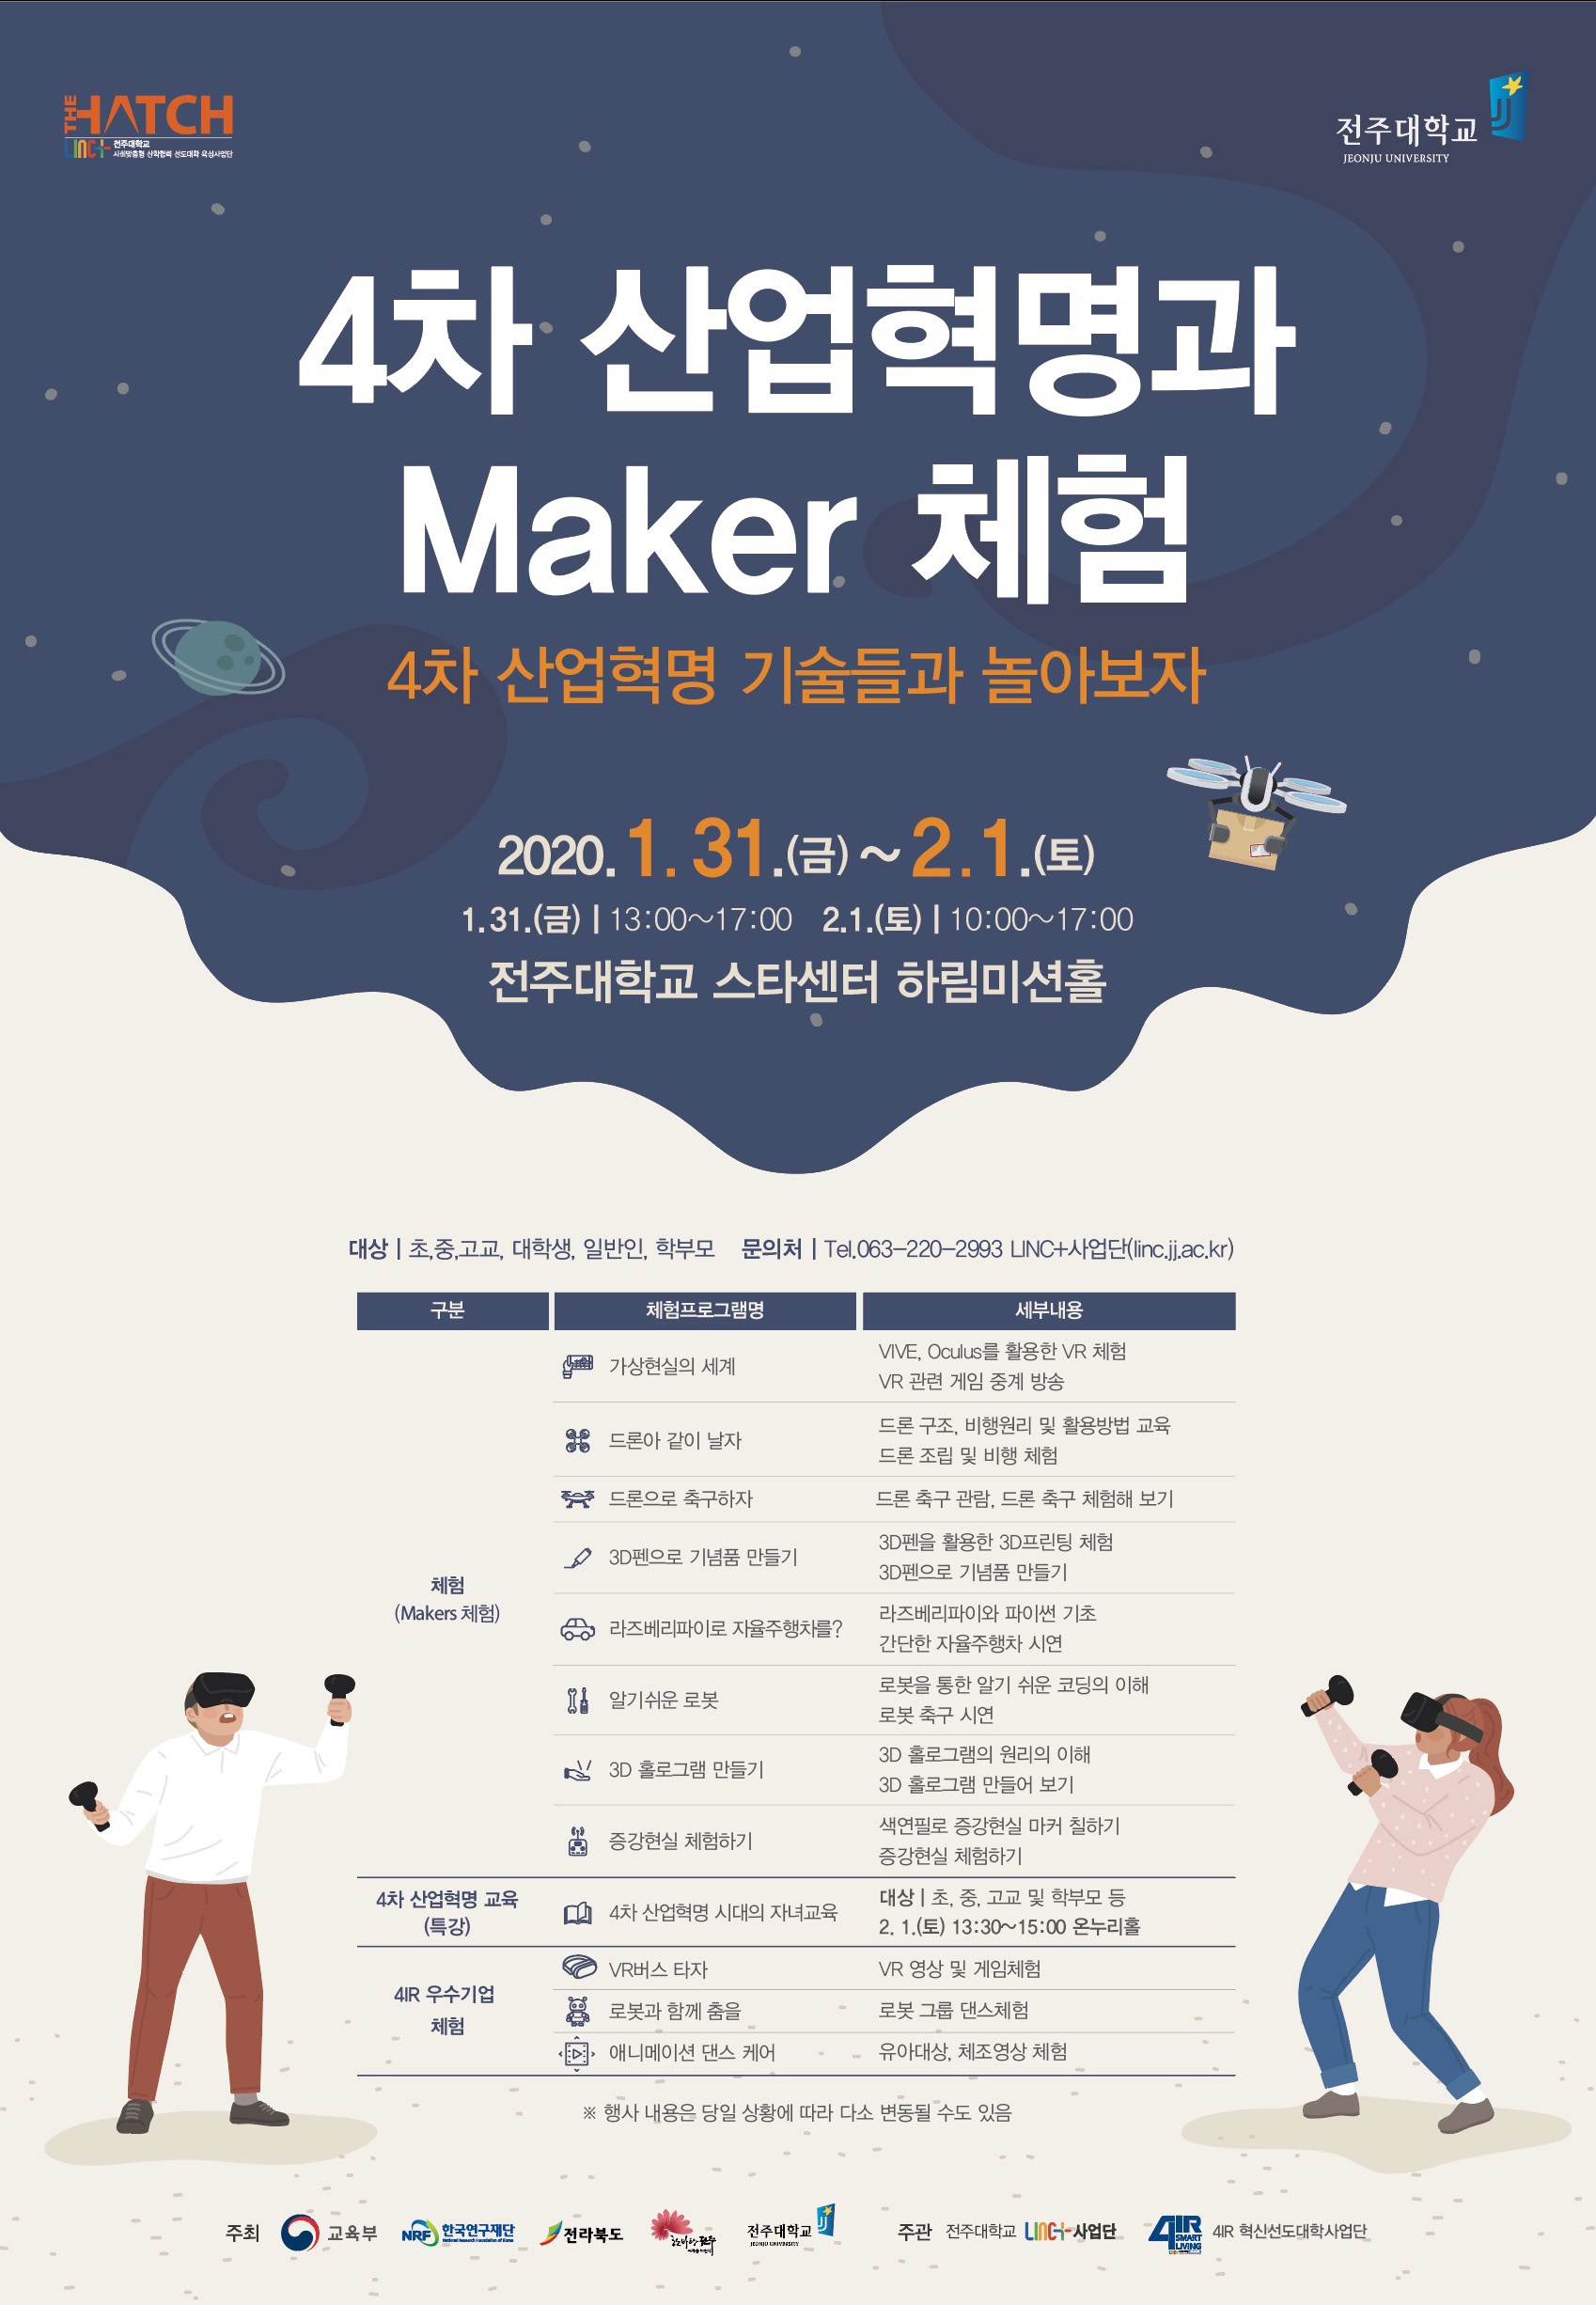  전주대, 31일부터 4차 산업혁명과 Maker 무료 체험 행사 개최.jpg